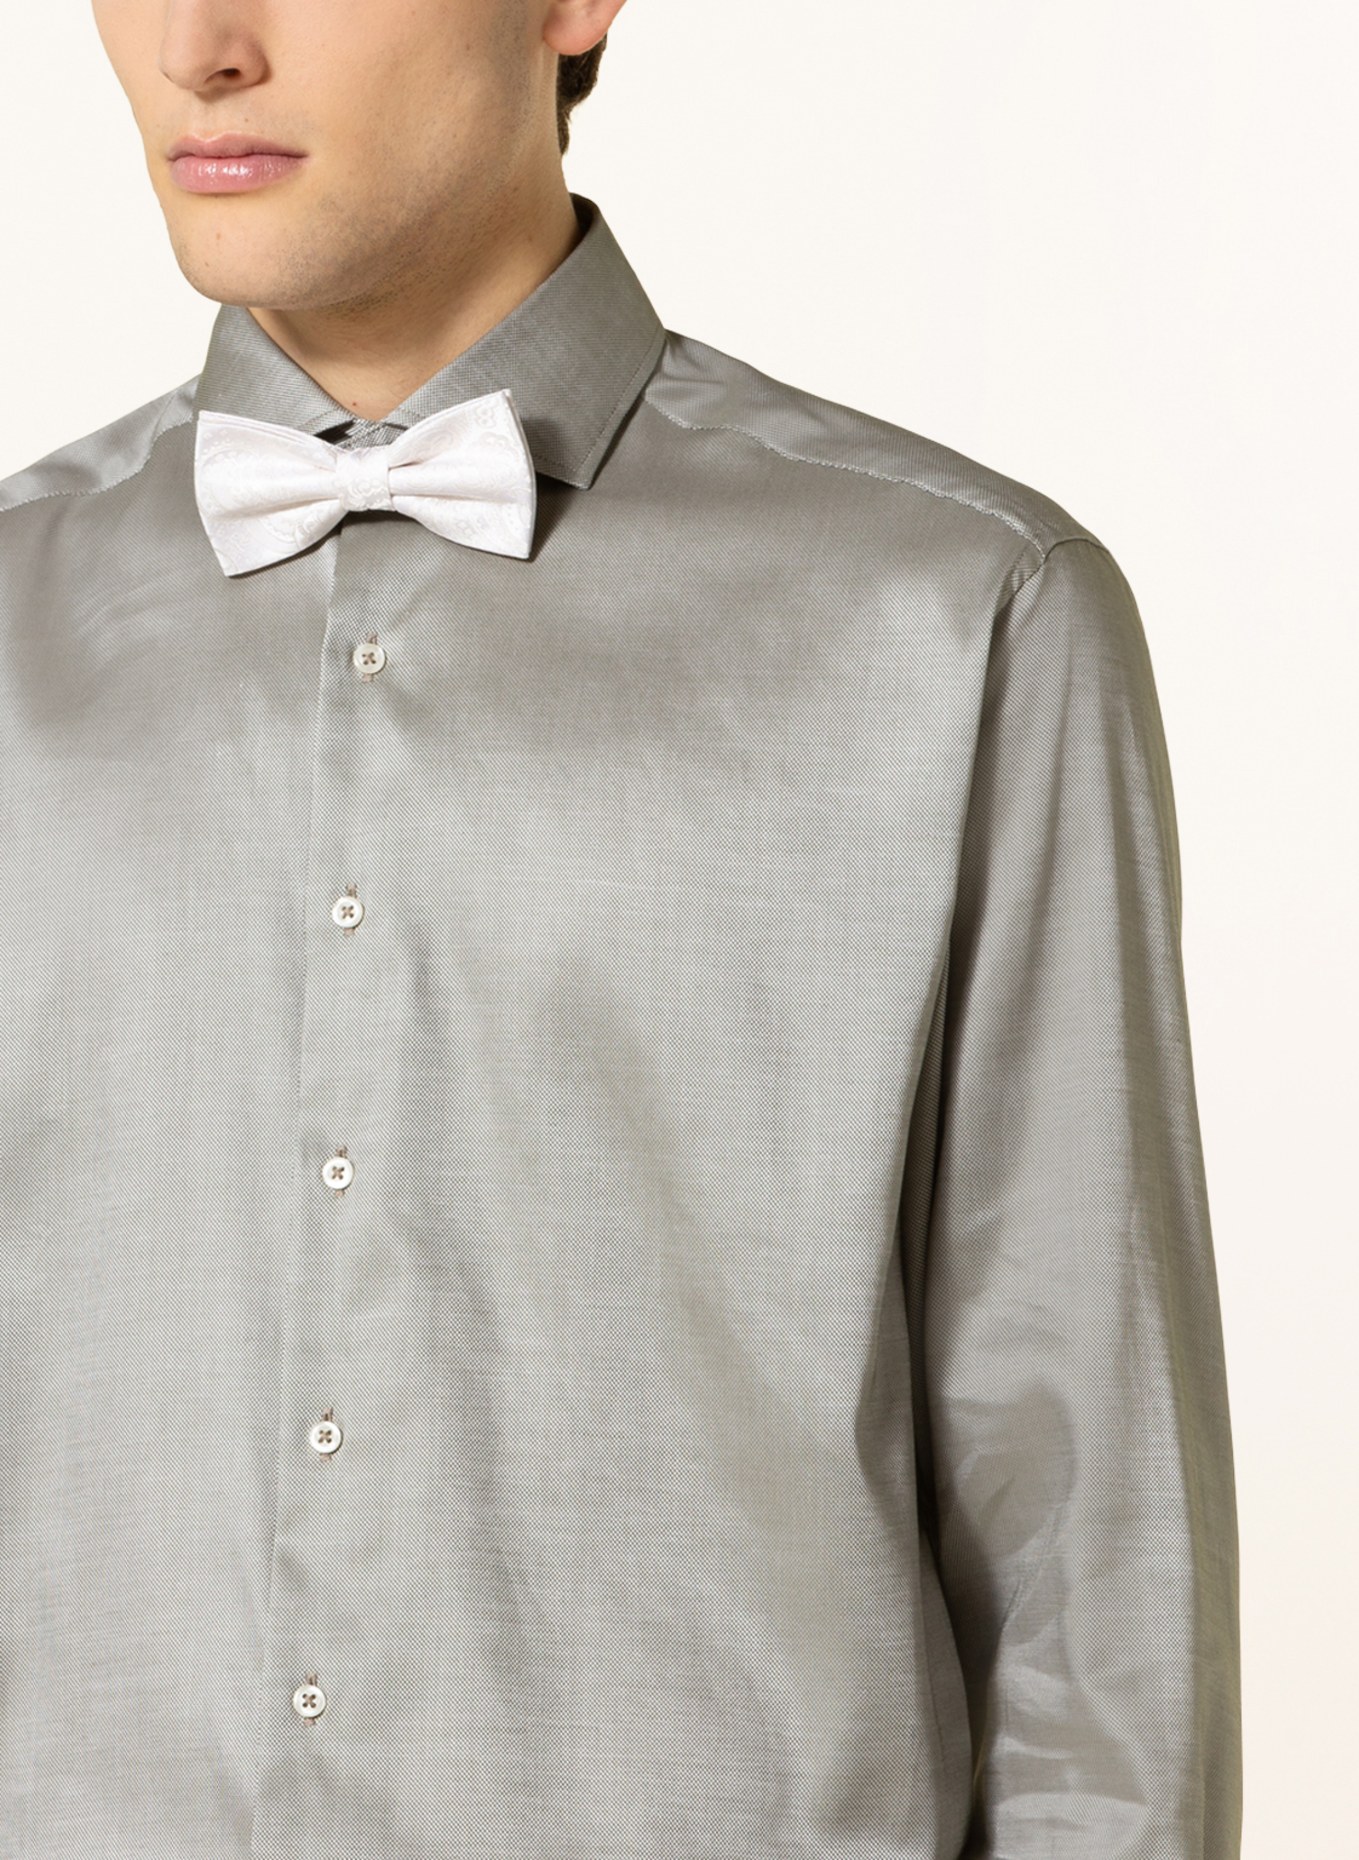 Prince BOWTIE Set: Bow tie and pocket handkerchief, Color: CREAM (Image 4)